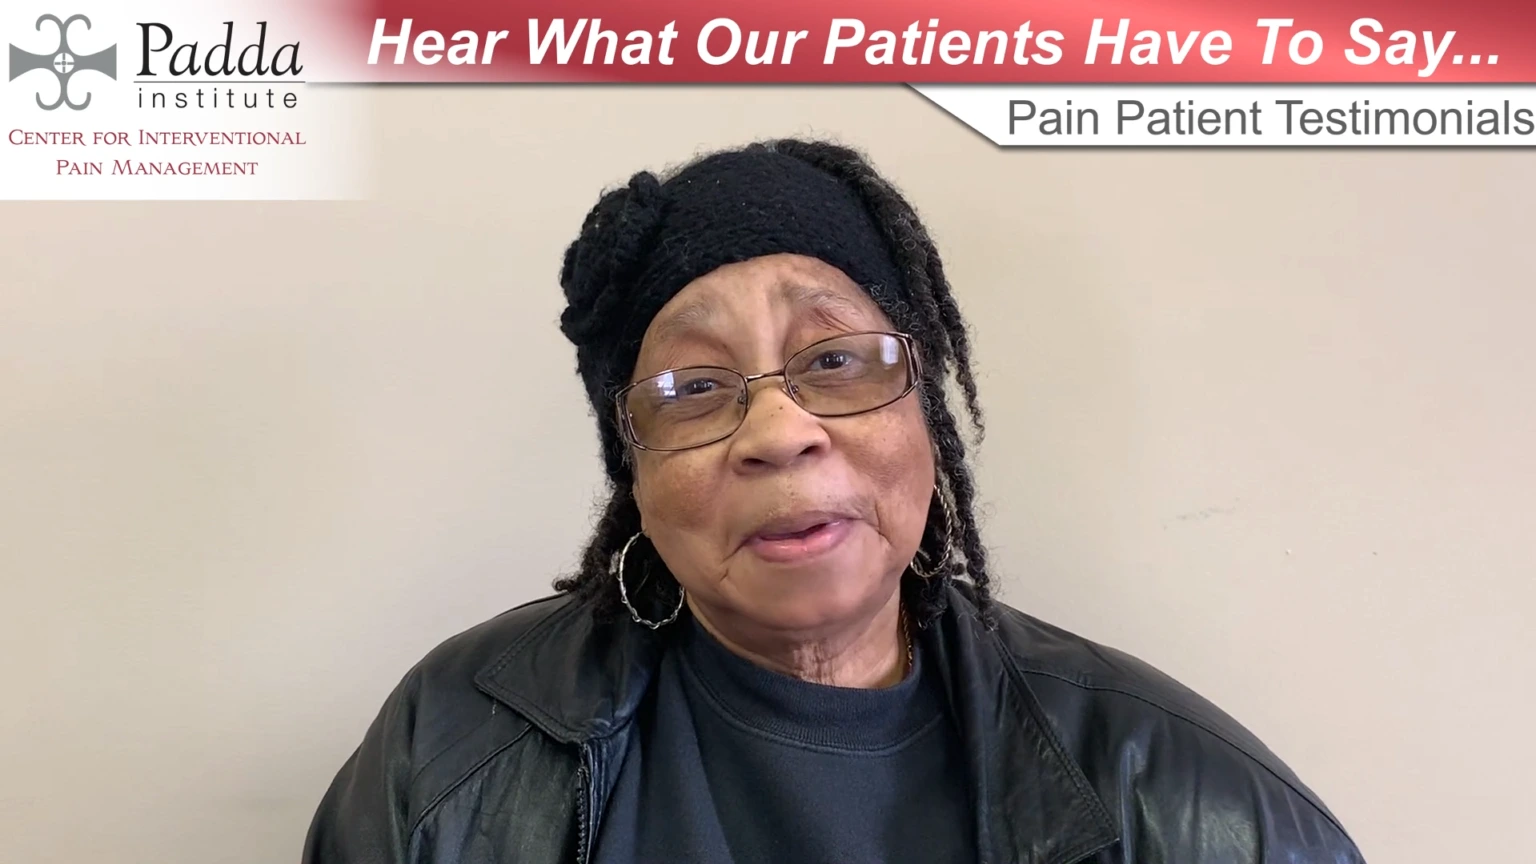 Pain Relief Testimonial - A Grateful Patient